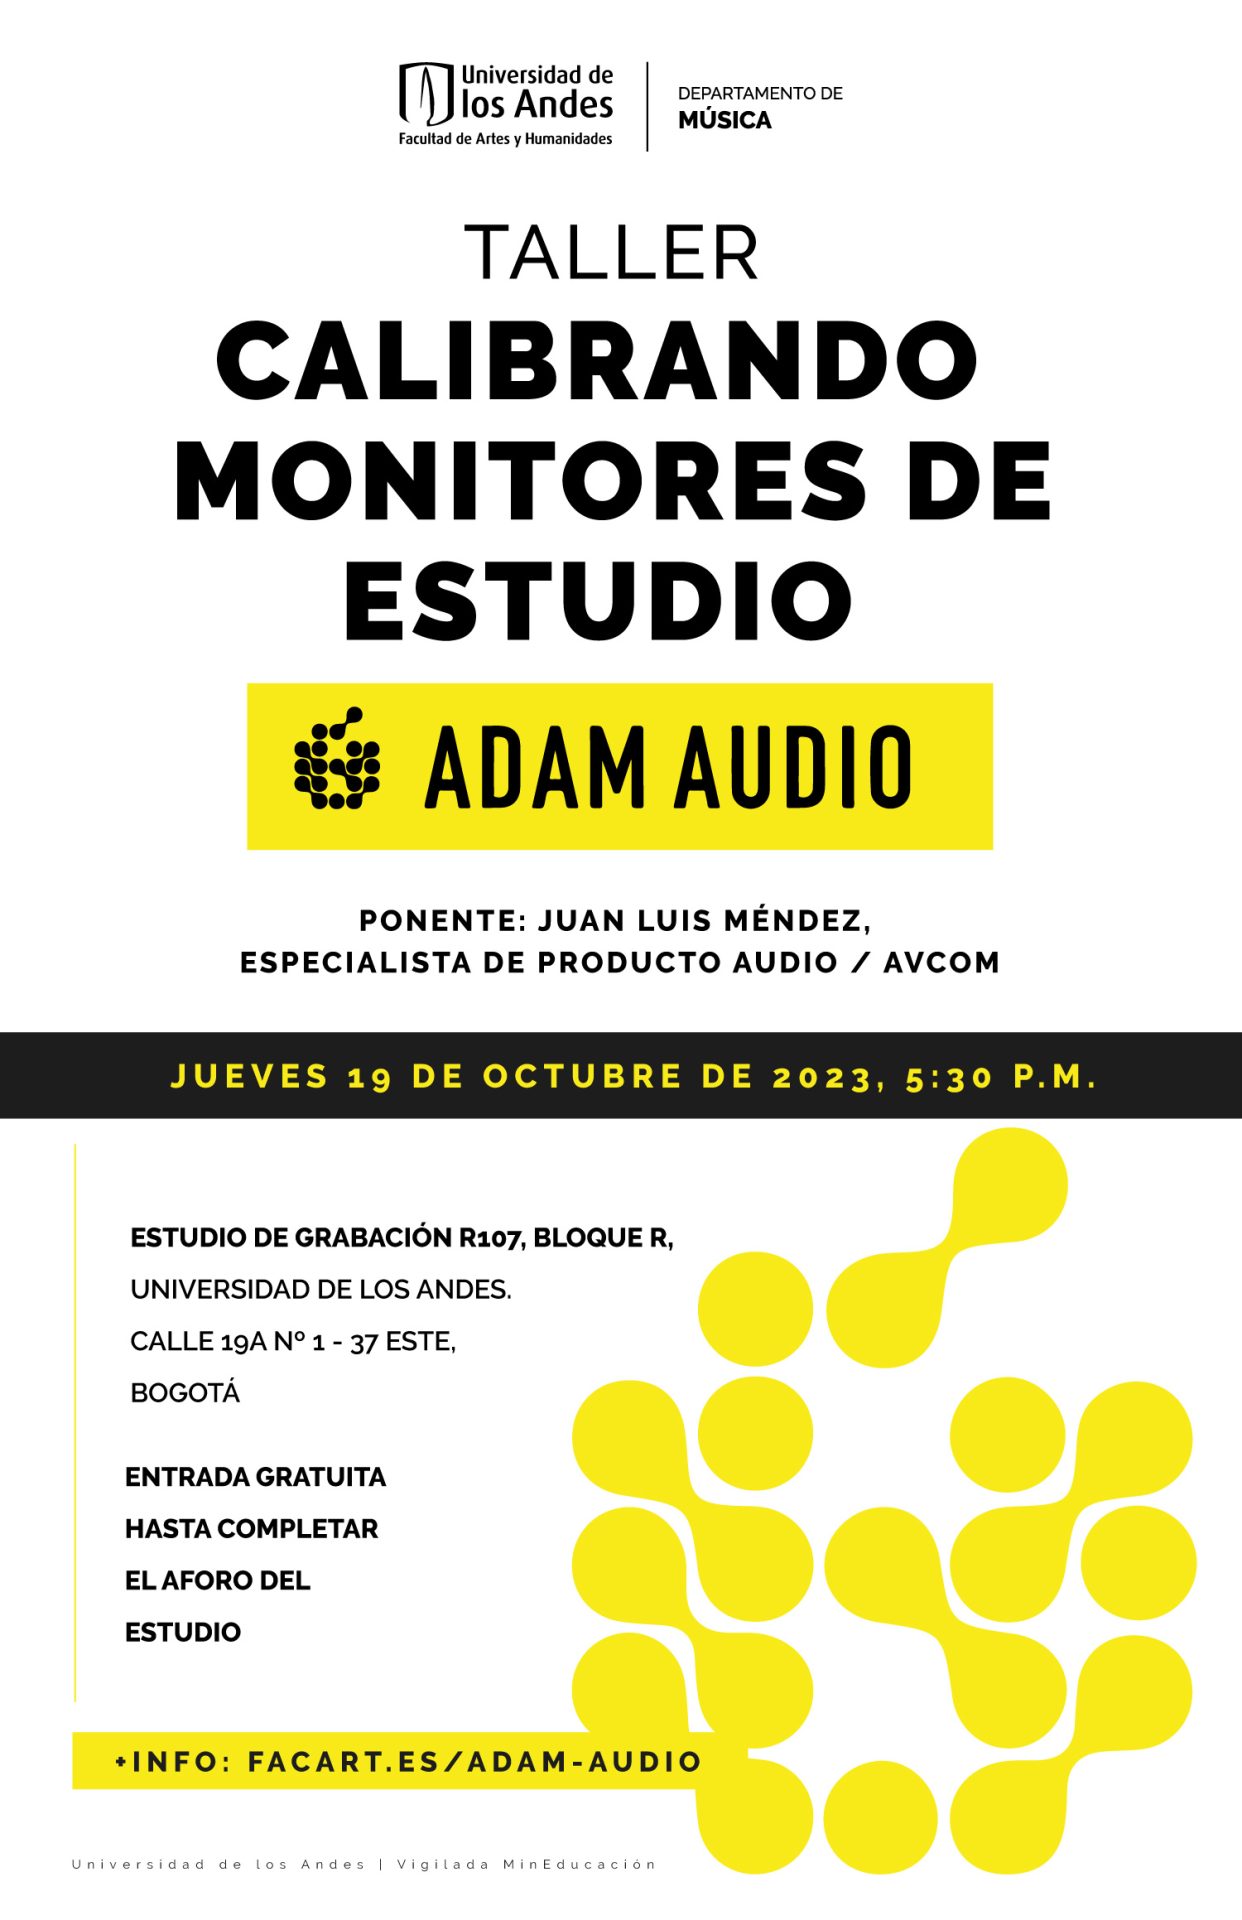 Jueves 19 de octubre de 2023 a las 5:30 p.m. en el estudio de grabación R_107, Universidad de los Andes